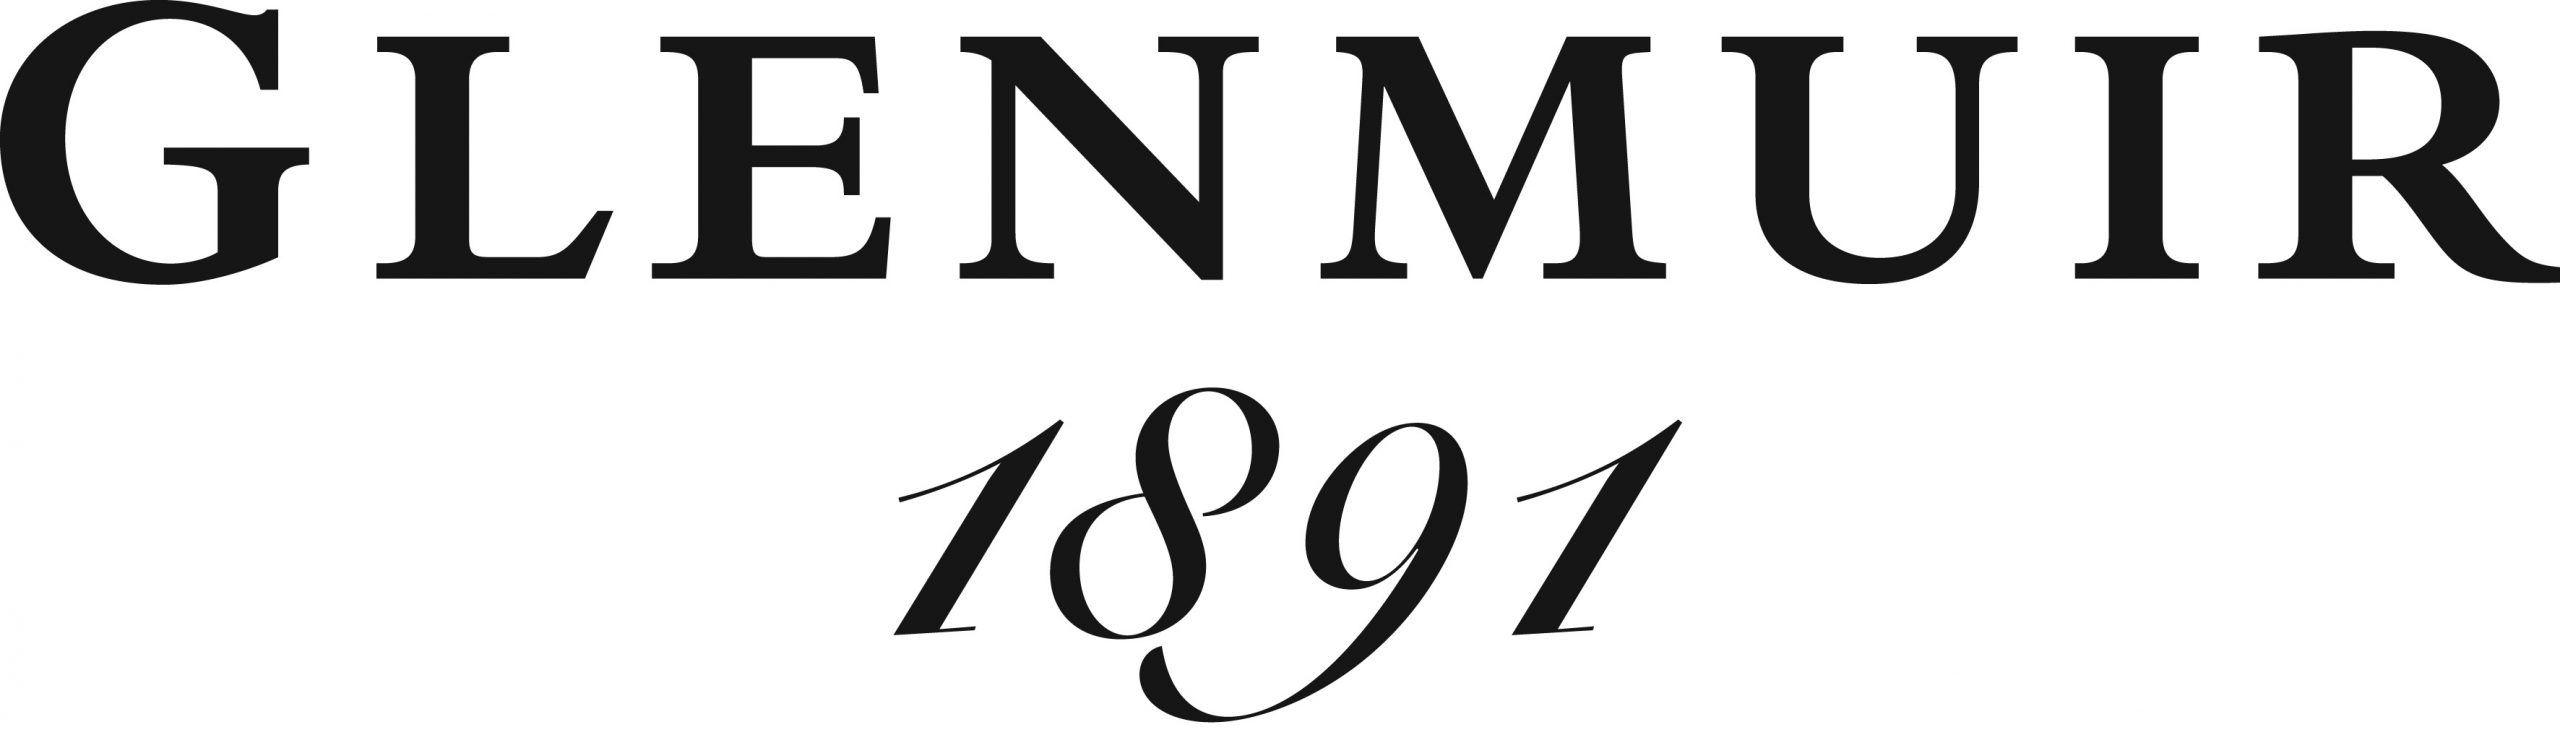 Glenmuir 1891 Script Logo large